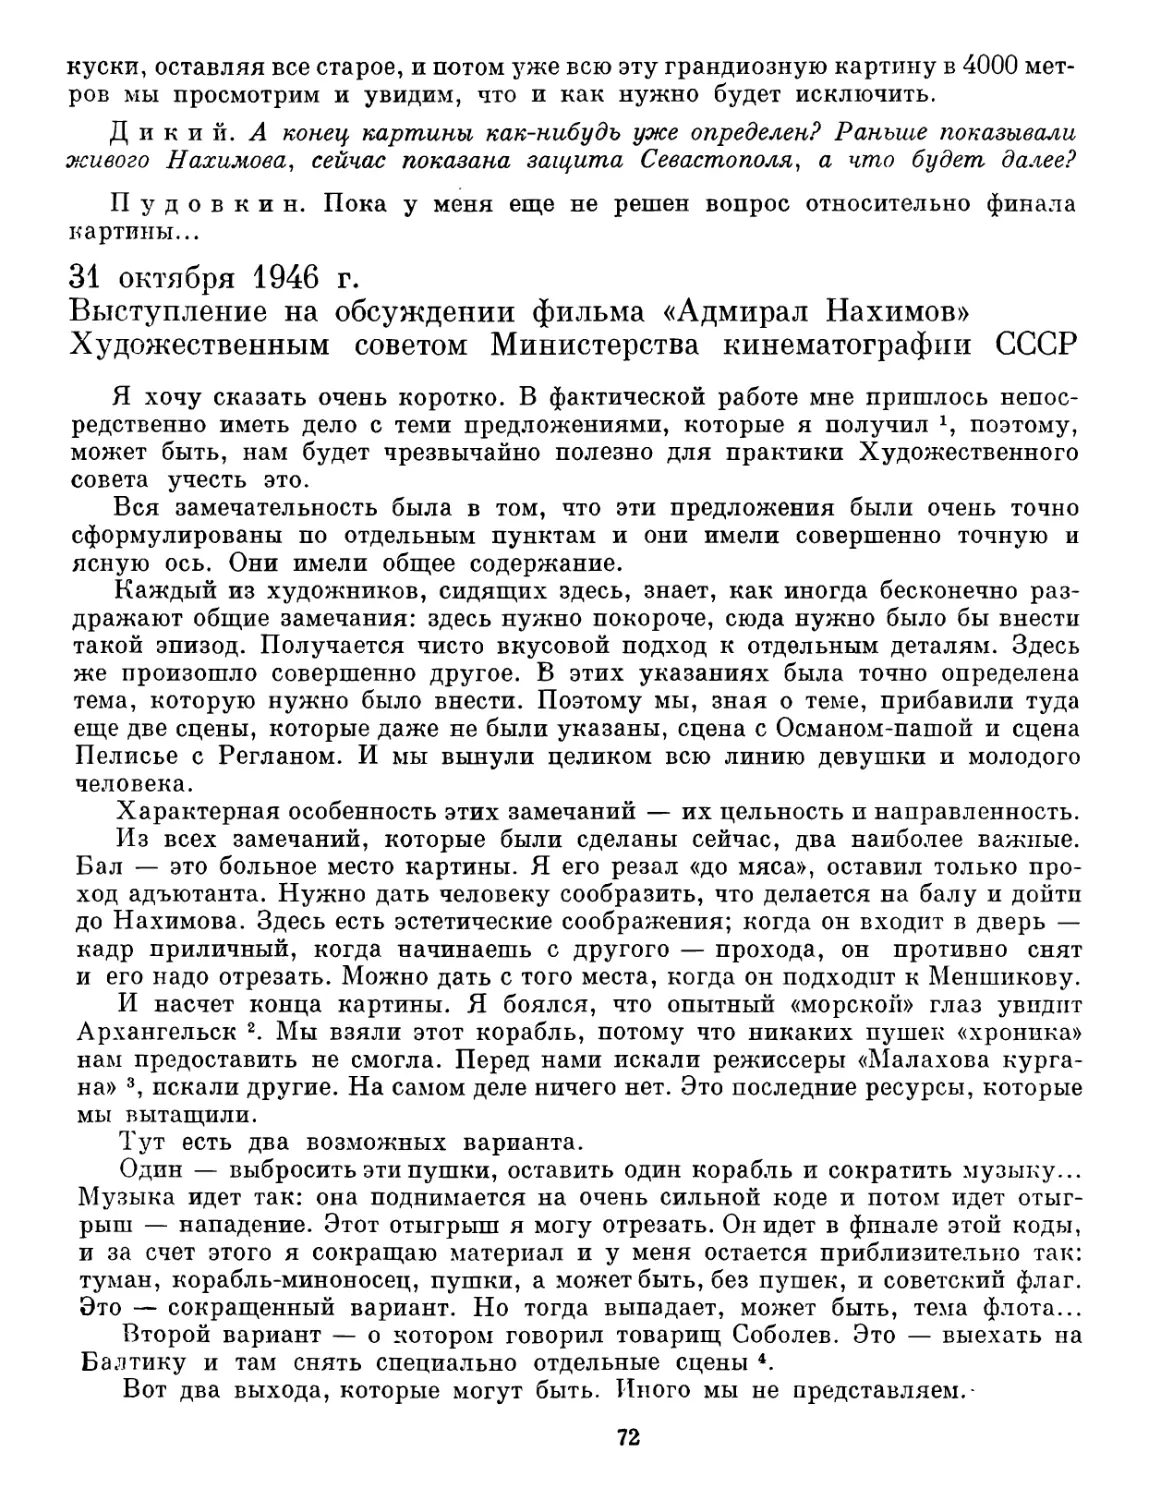 31 октября 1946 г. Выступление на обсуждении фильма «Адмирал Нахимов» Художественным советом Министерства кинематографии СССР